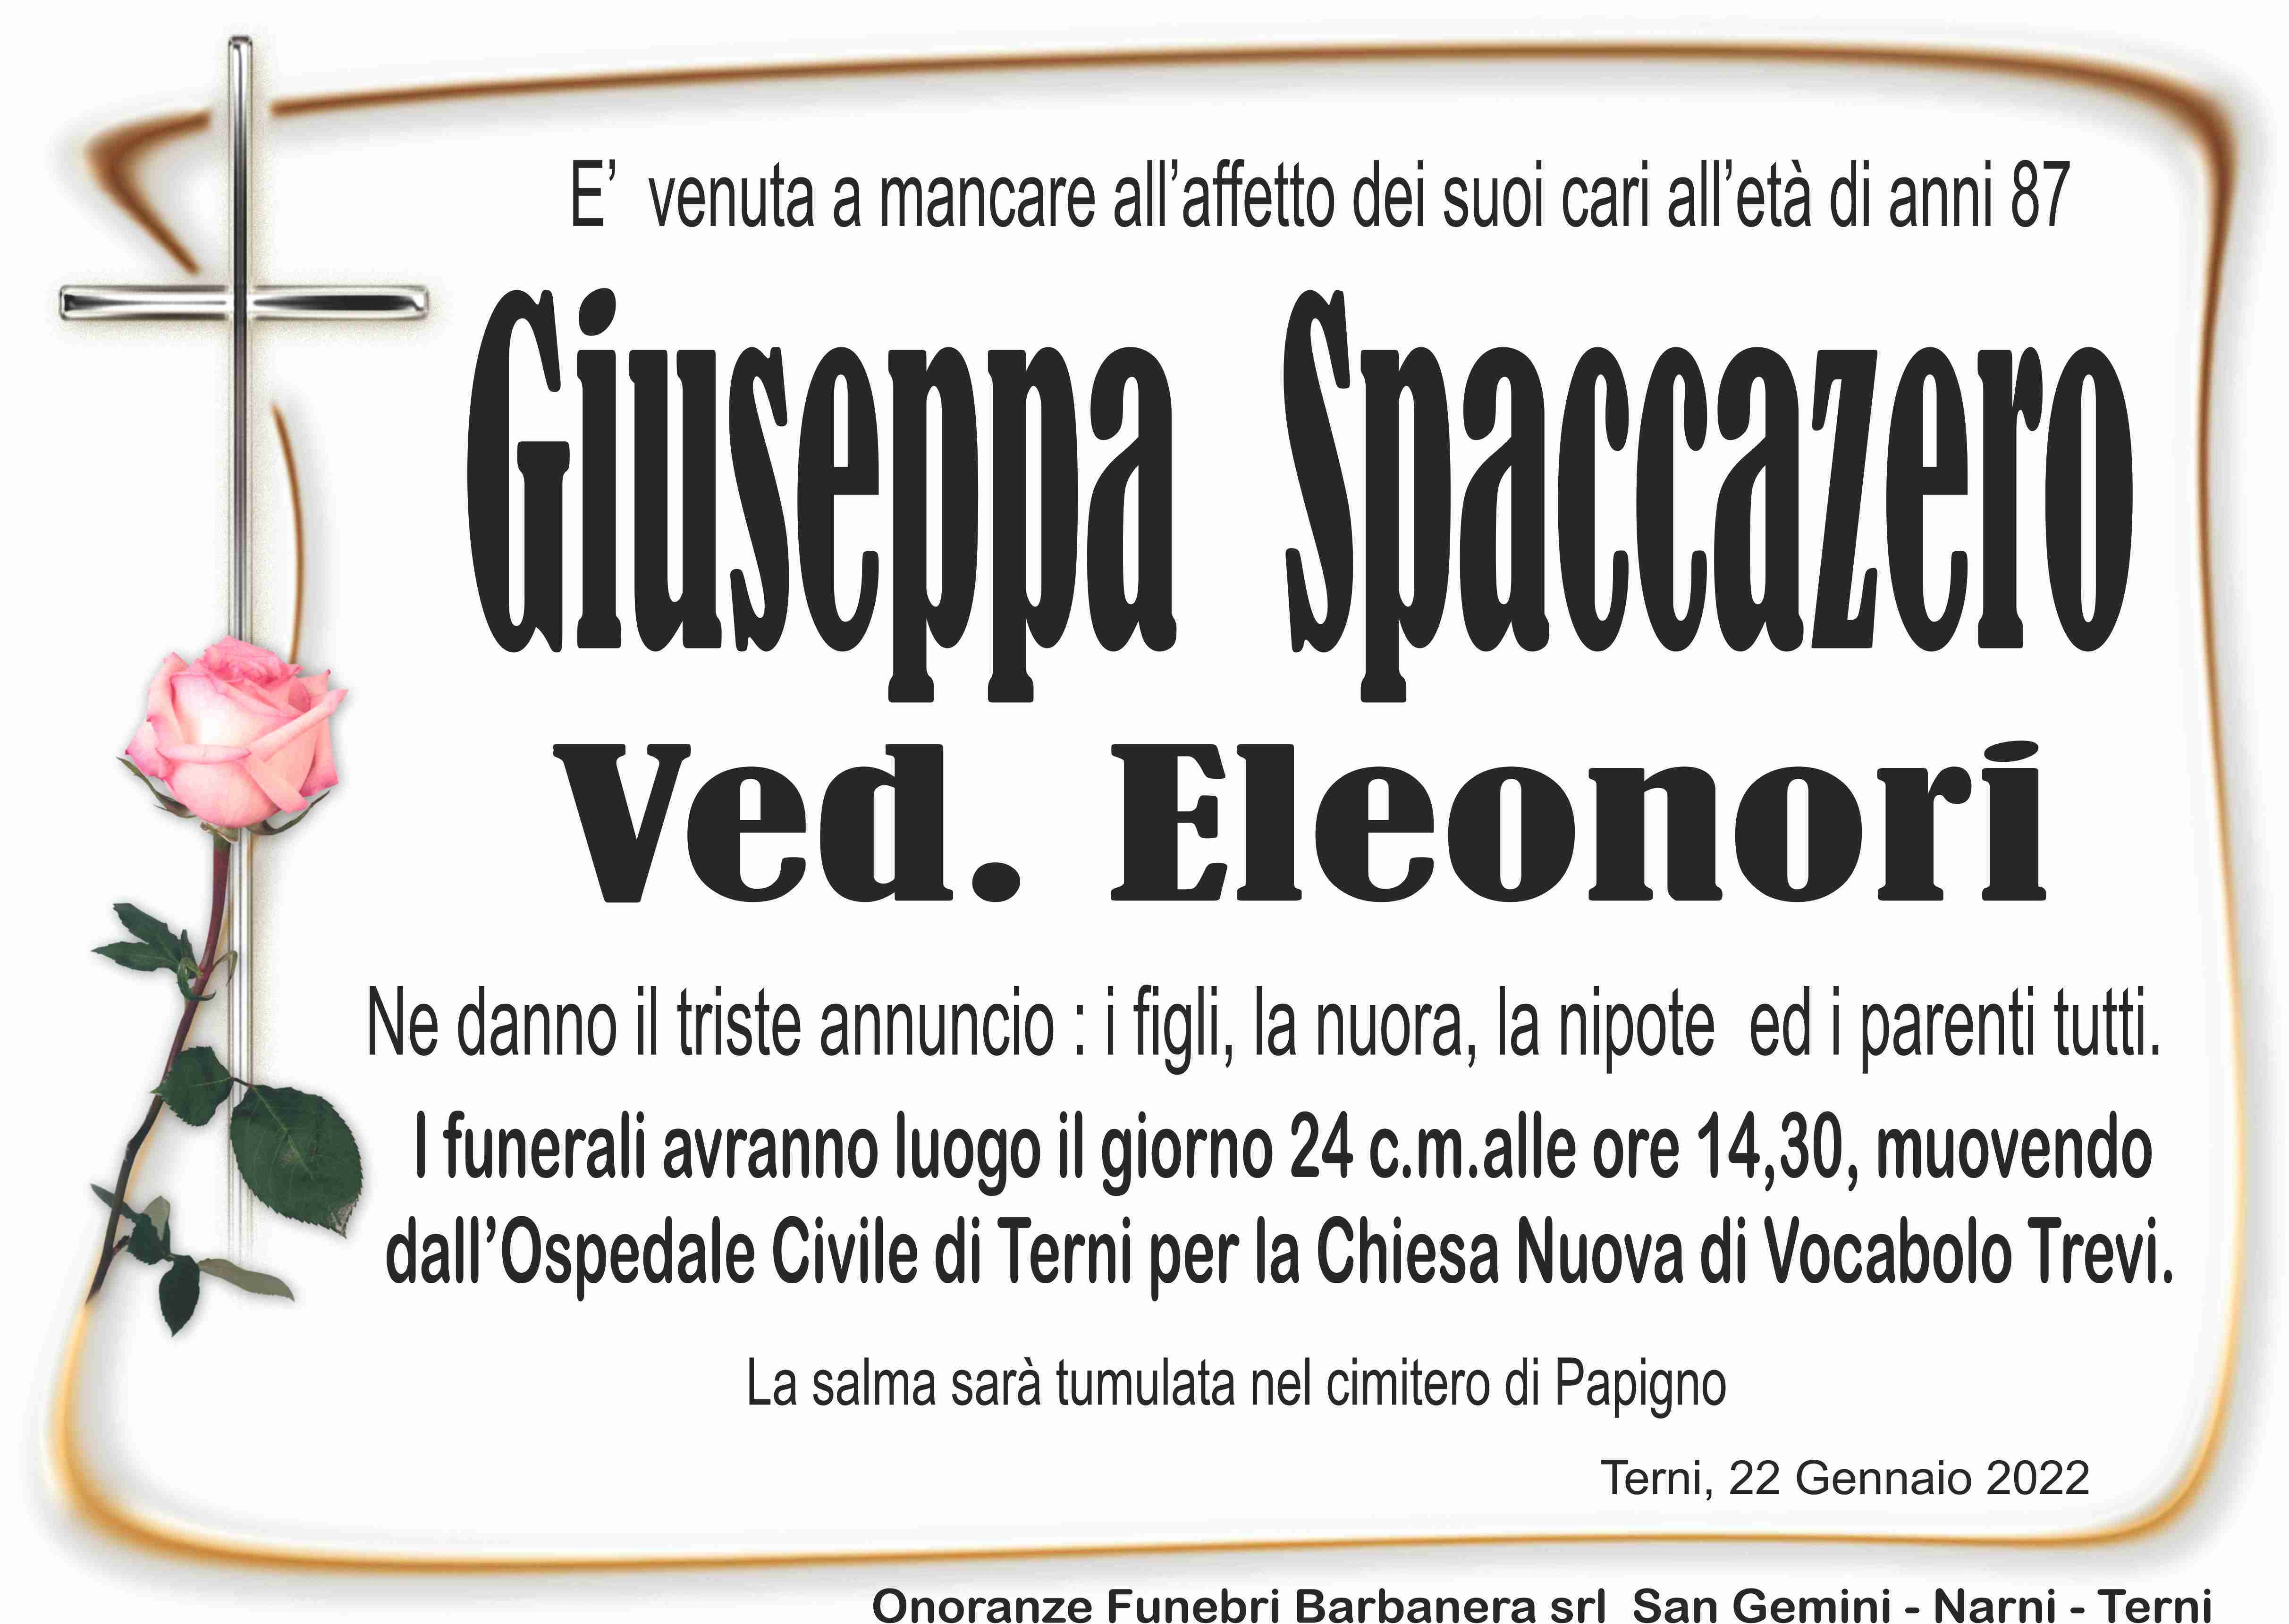 Giuseppa Spaccazero